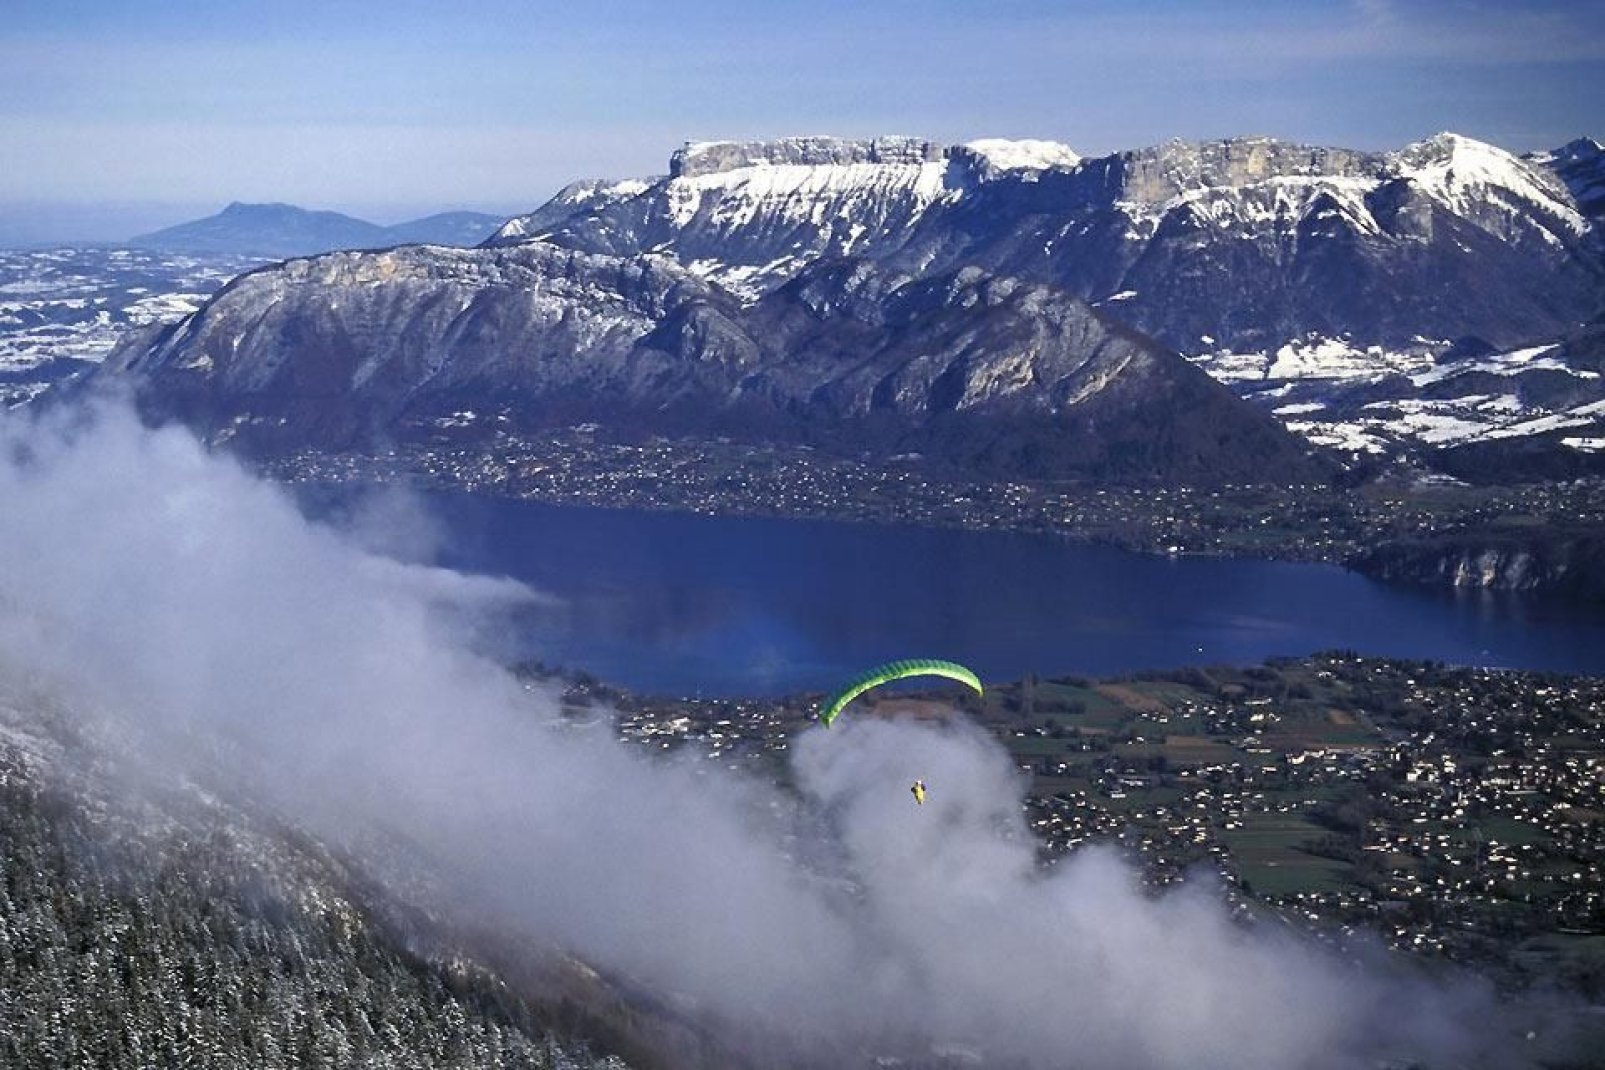 Paragliding, Drachenfliegen, Bungee Jumping? Wenn Sie Nervenkitzel suchen, ist der Lac d'Annecy genau das Richtige!